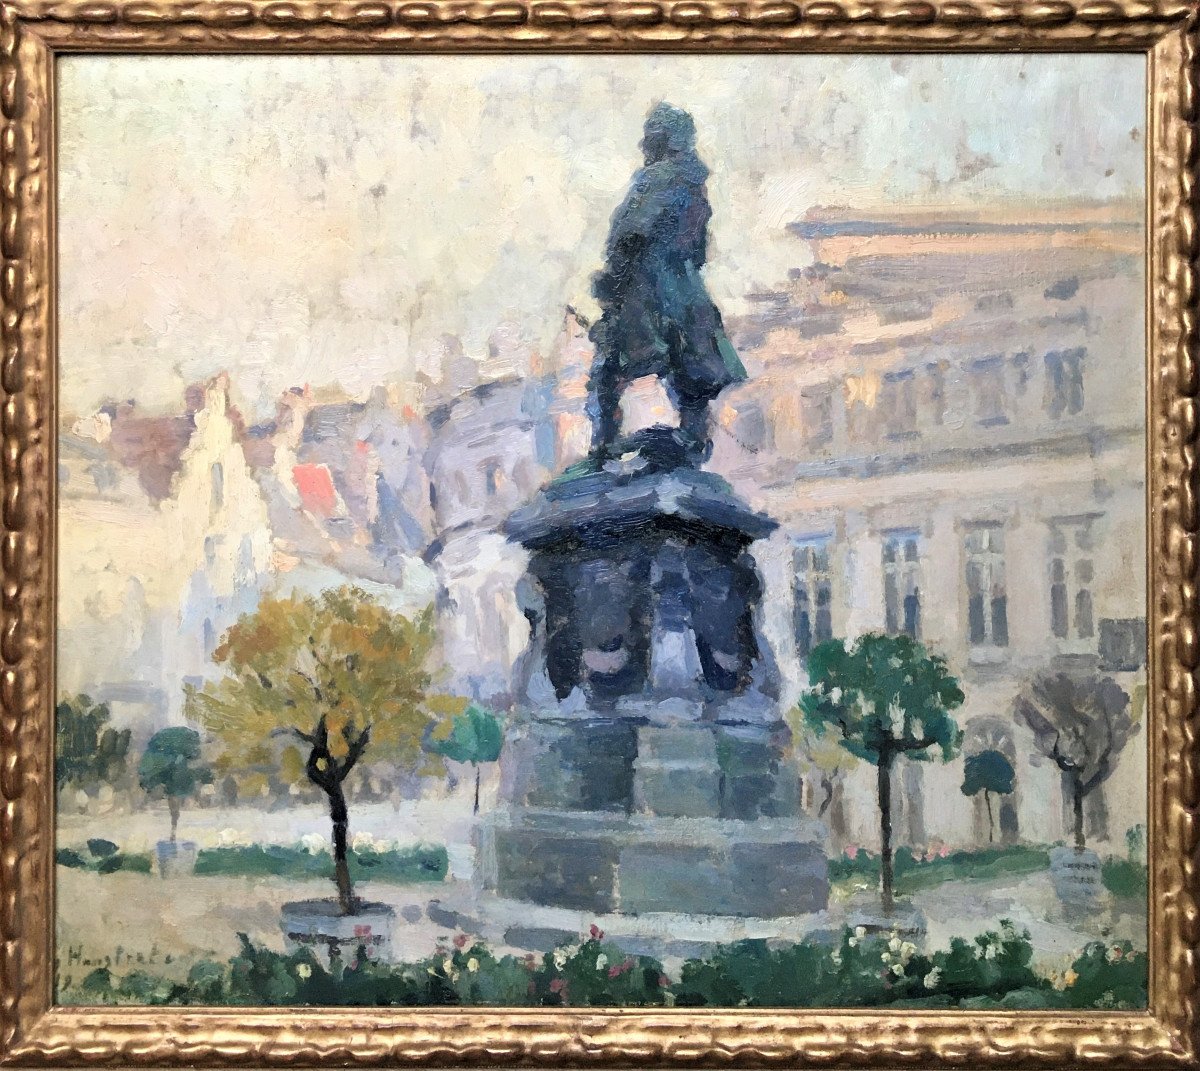 Gaston Haustrate (1878-1949). "Place du Musée , Charles de Lorraine, Bruxelles". 1919.